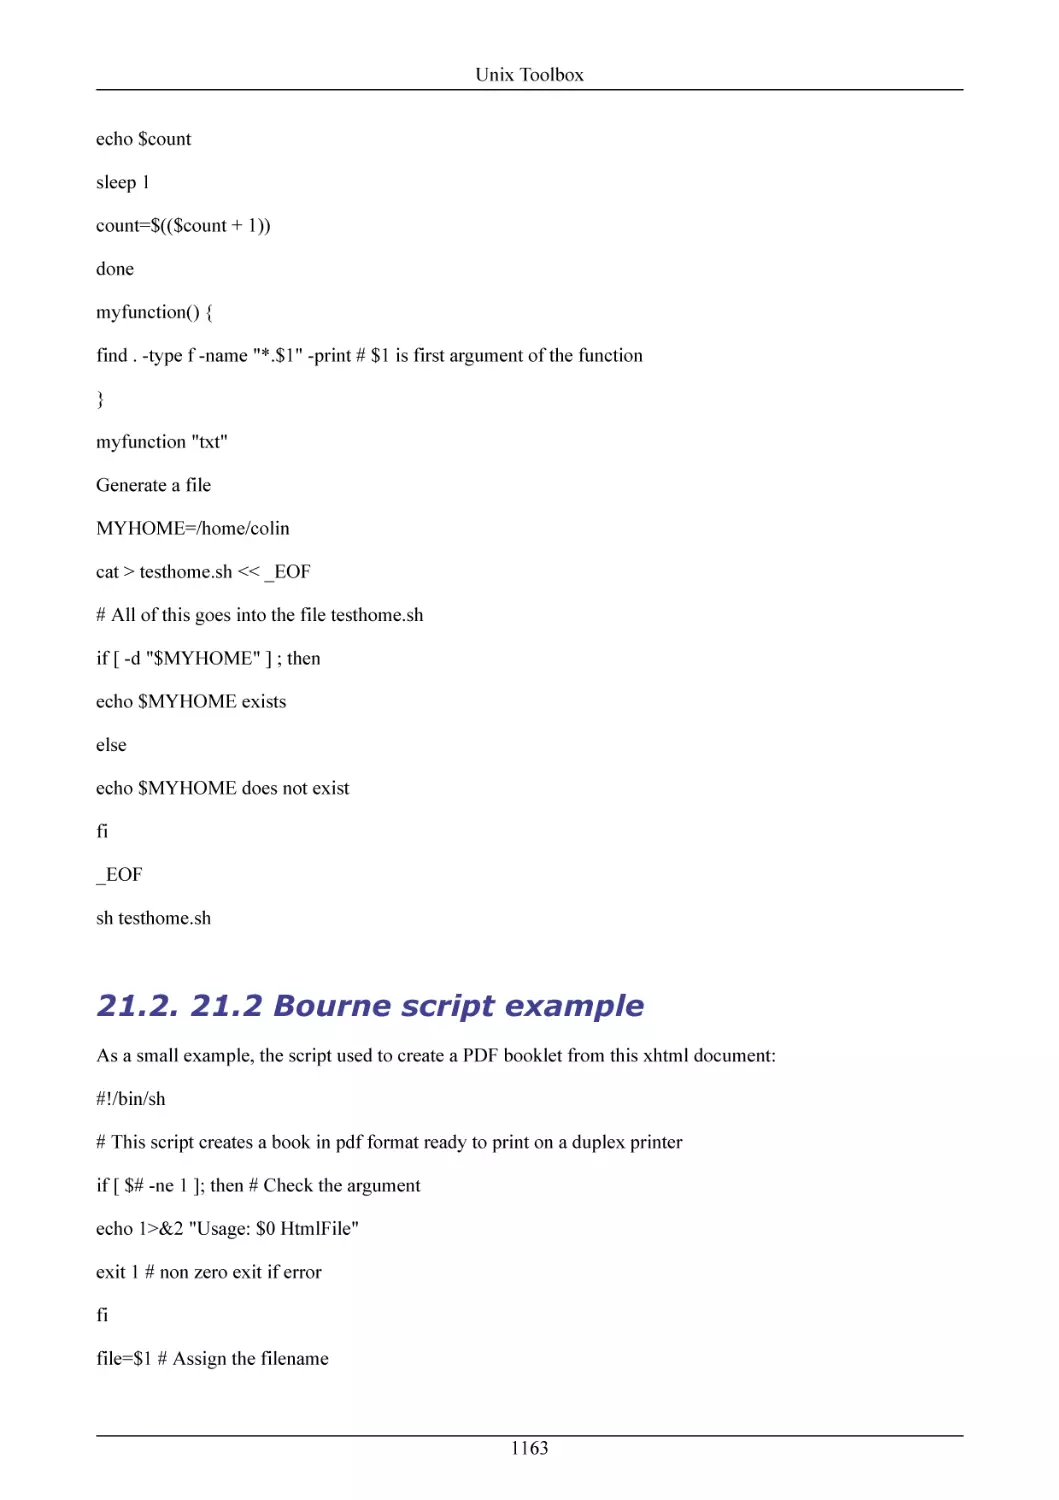 21.2 Bourne script example